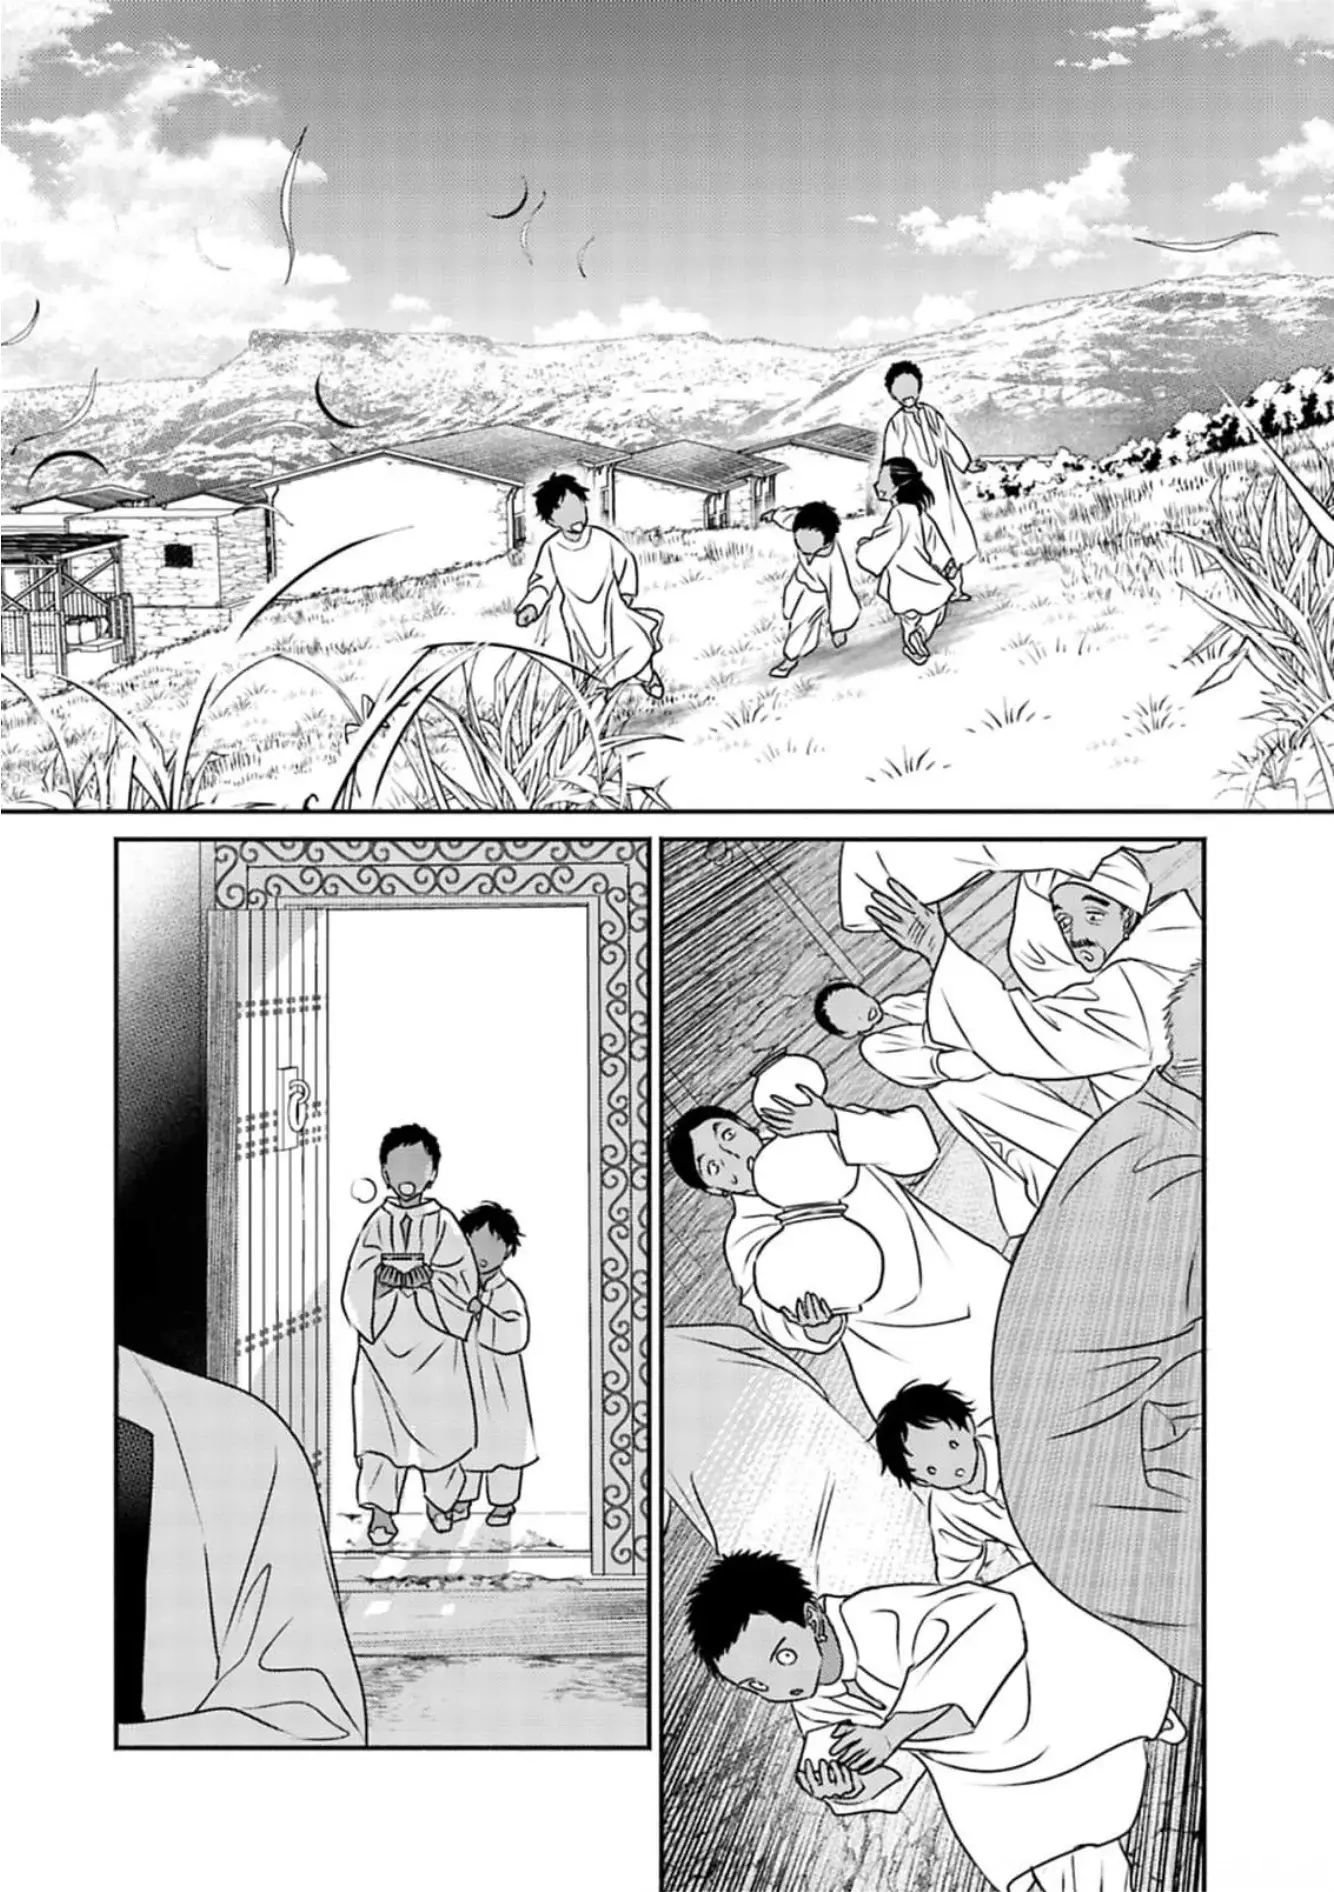 Kouguu No Omega - 6 page 1-dde6d415